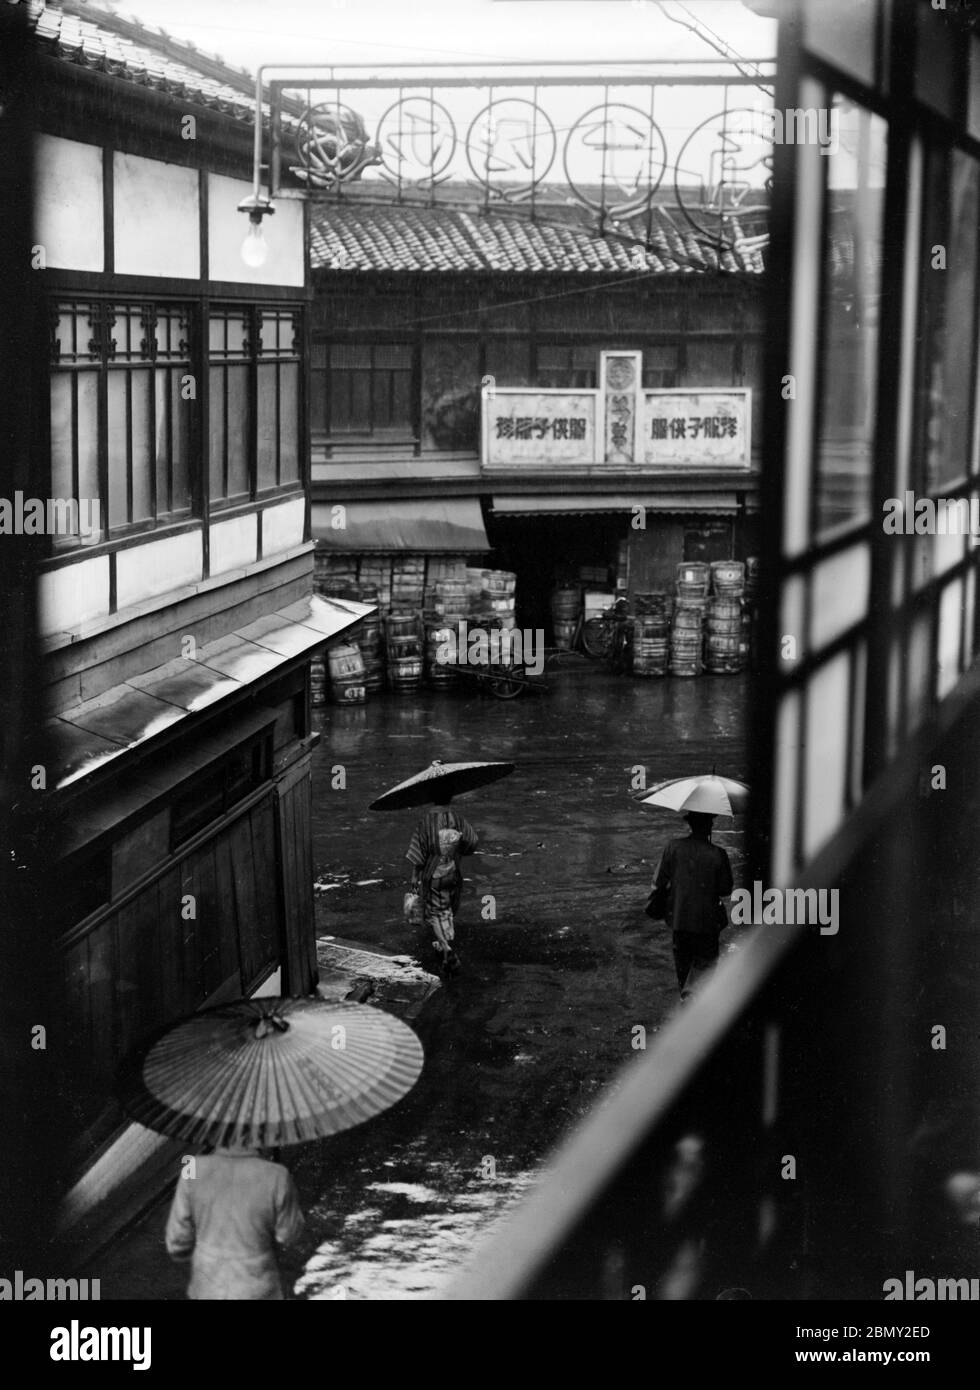 [ 1930 Giappone - Backstreet View ] - Vista da una camera backstreet di secondo piano durante una giornata di pioggia da qualche parte in Giappone. Due persone con ombrelloni di carta giapponese e una persona con un ombrello occidentale camminano lungo la strada. Sul retro si può vedere un negozio. vetro vintage del xx secolo negativo. Foto Stock